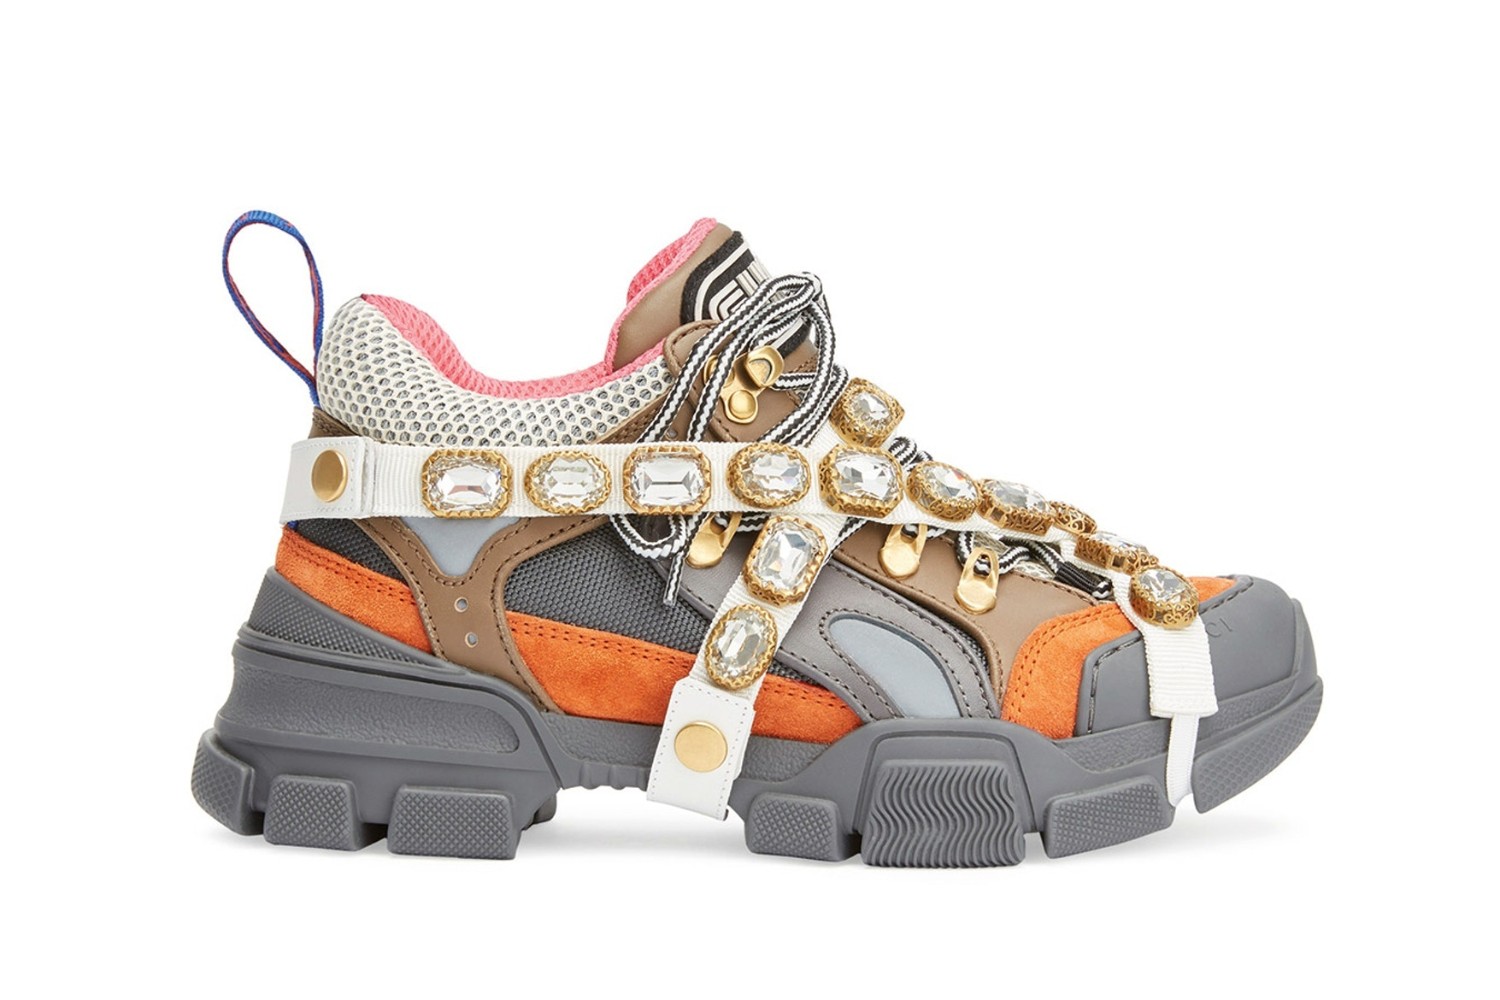 Gucci's Jewel-Covered SEGA Sneaker Will 